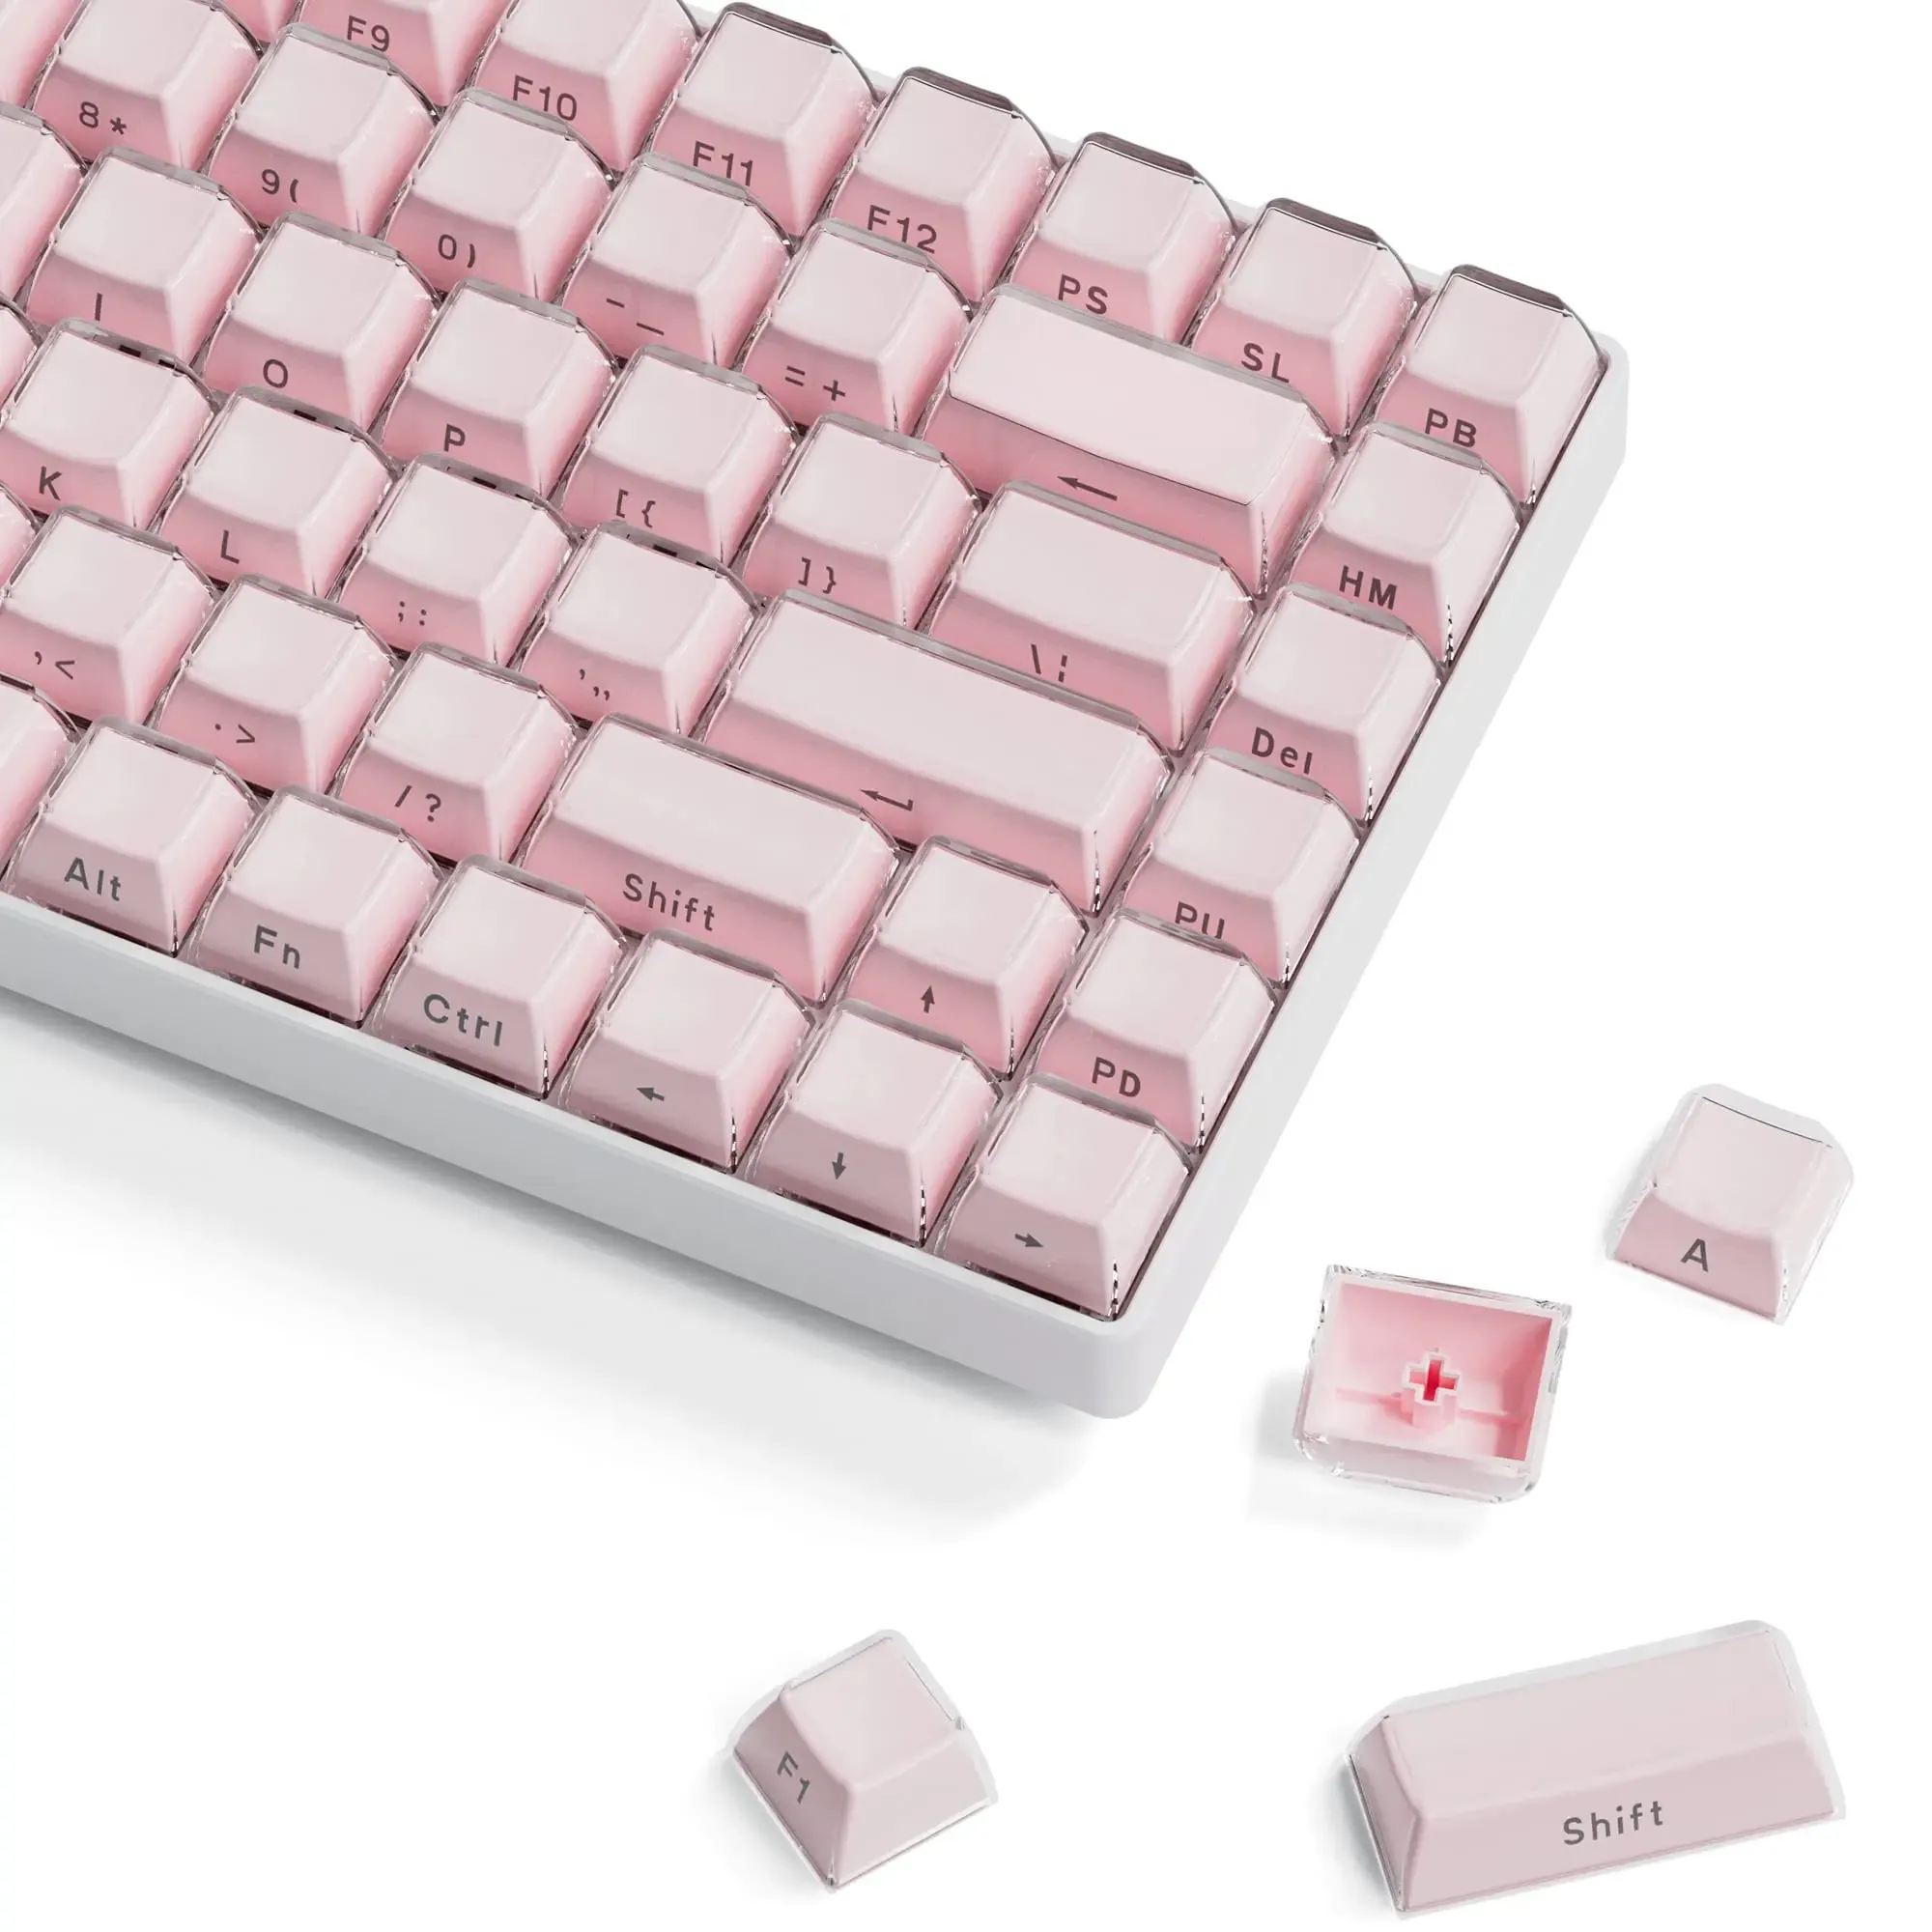 Tillbehör 113 Key Jelly Round Side Keycaps Ice Crystal genomskinlig rosa OEM -profil Key Cap för körsbär MX 61 68 104 Mekaniskt tangentbord